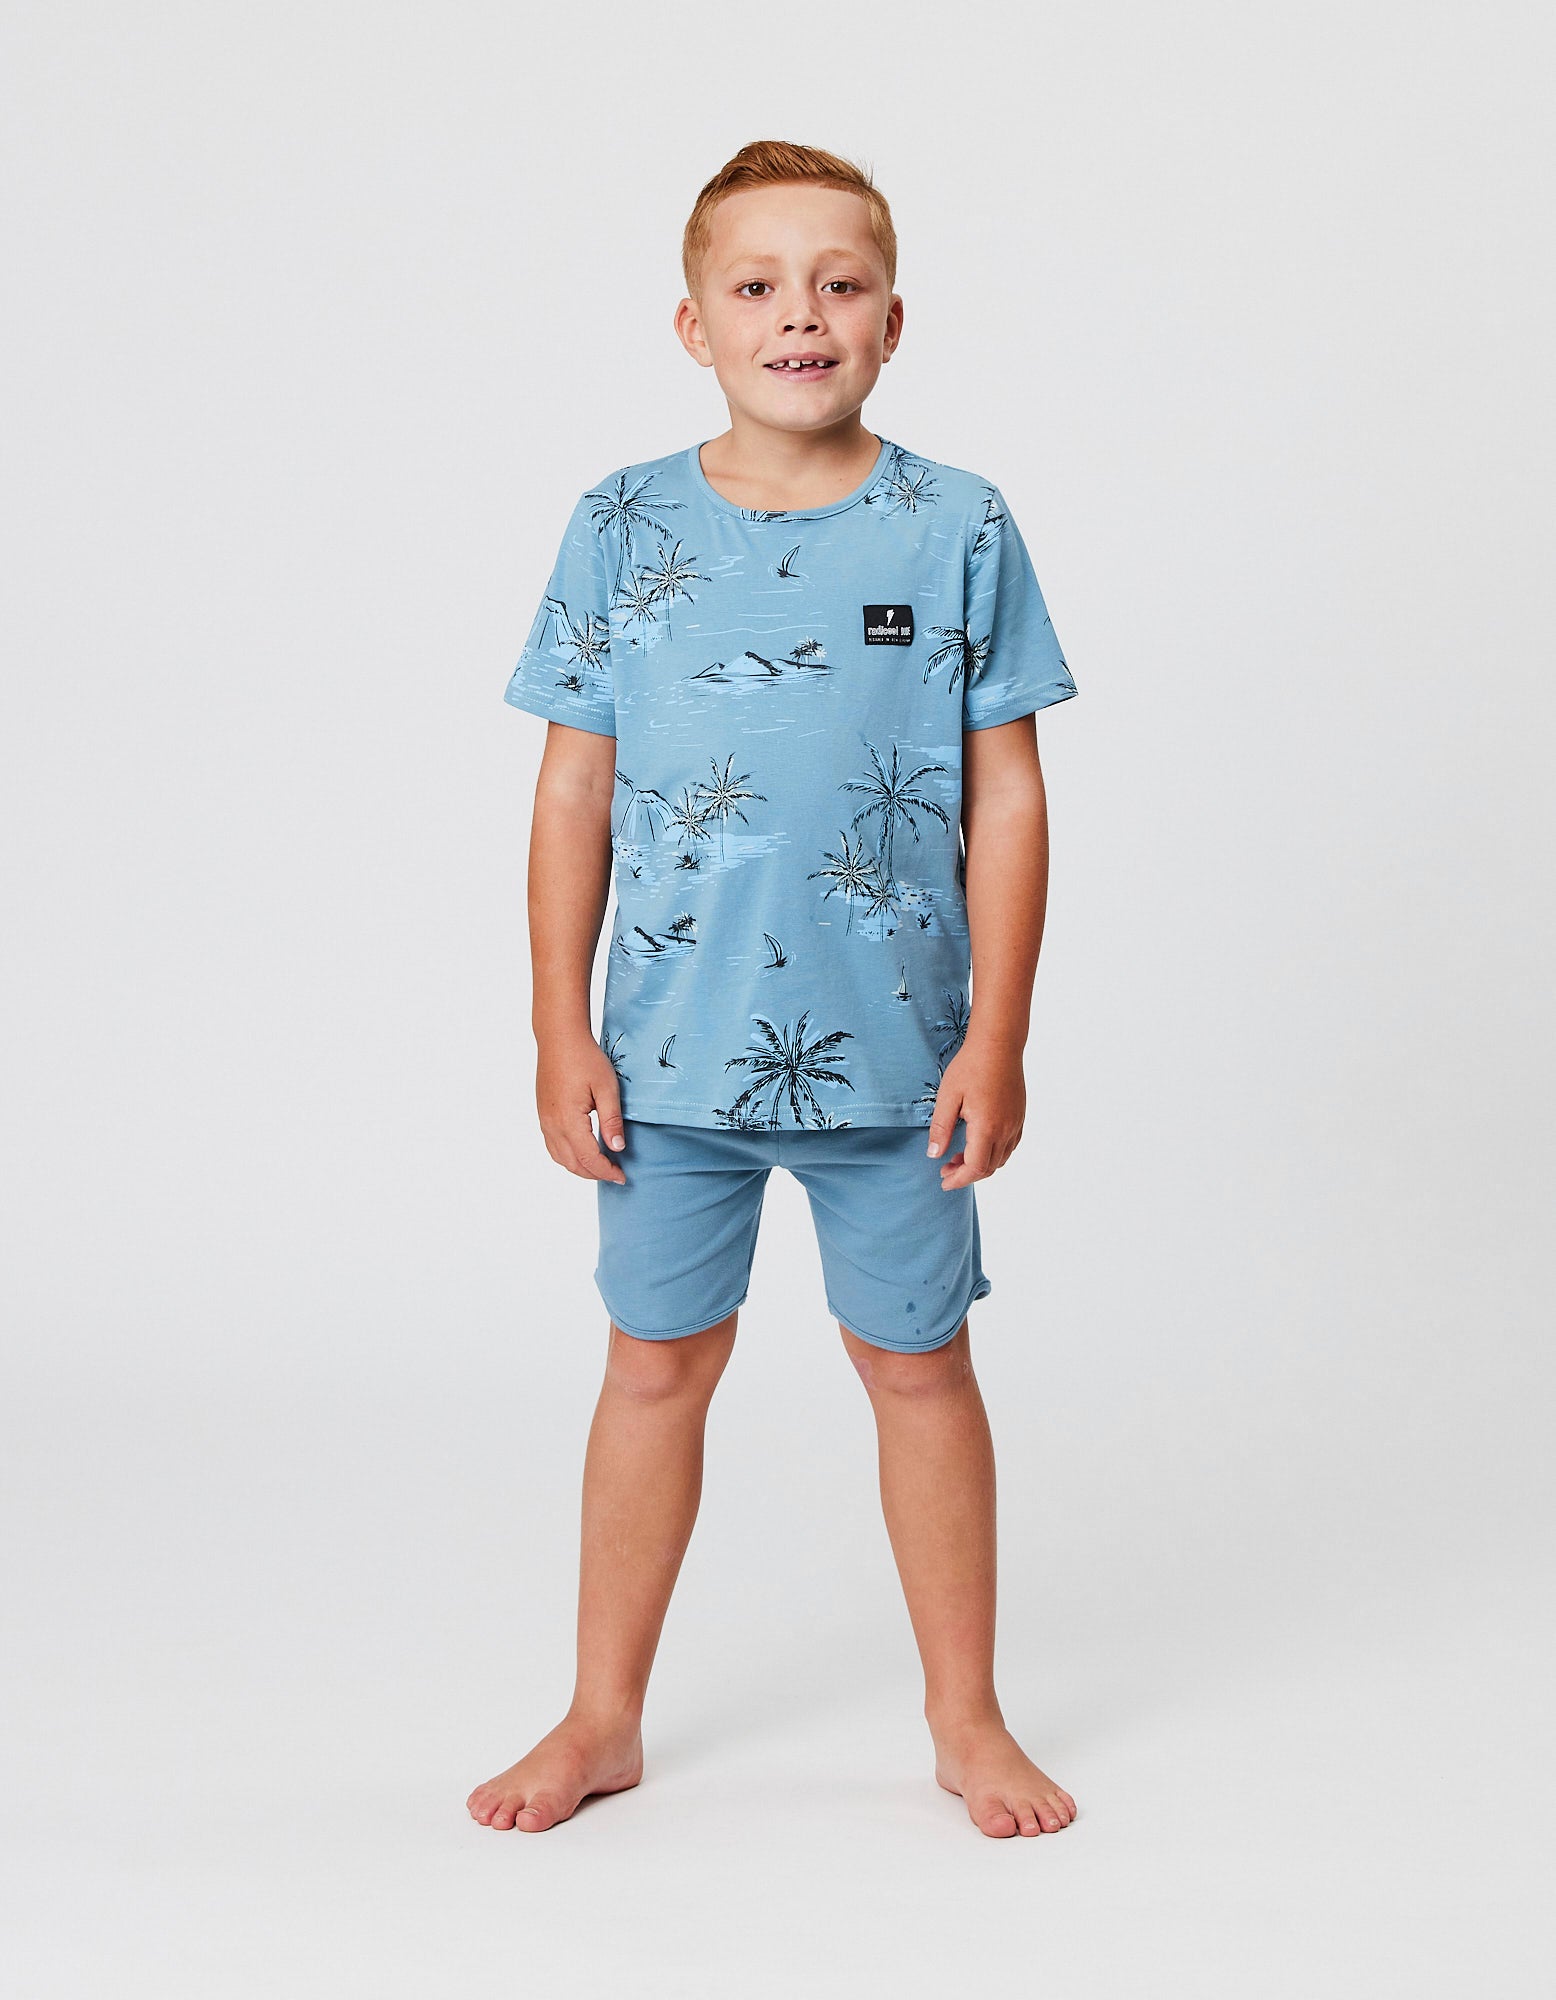 Model wearing the Radicool Kids Bermuda Palms Tee in blue